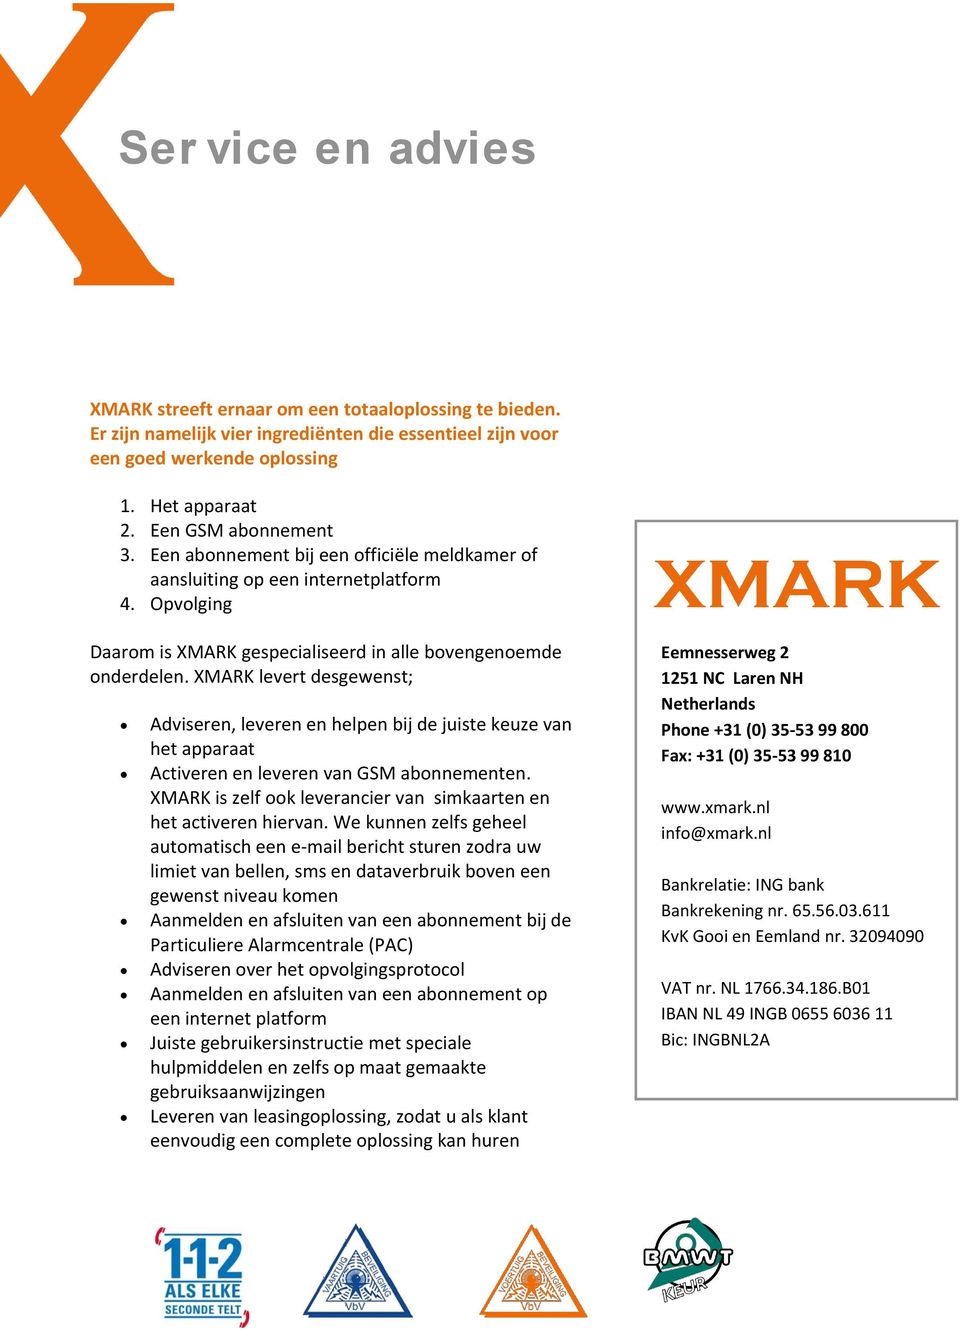 XMARK levert desgewenst; Adviseren, leveren en helpen bij de juiste keuze van het apparaat Activeren en leveren van GSM abonnementen.